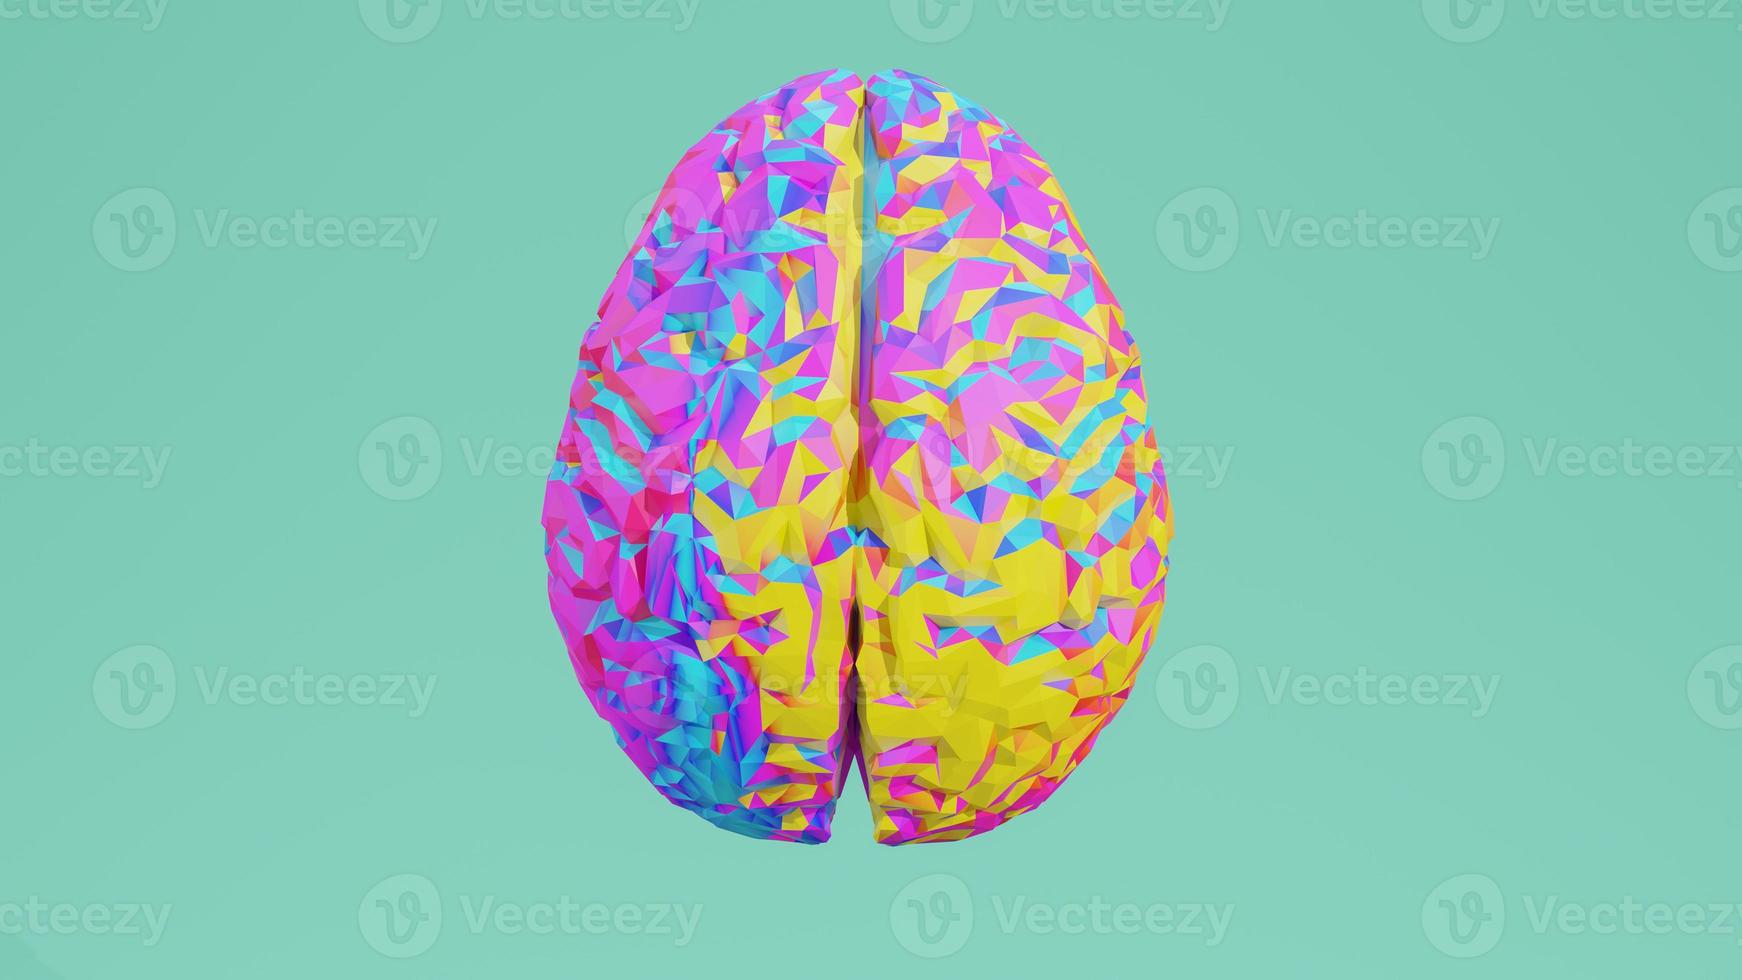 Vue de côté low poly coloré rendu 3d du cerveau isolé sur l'arrière-plan photo